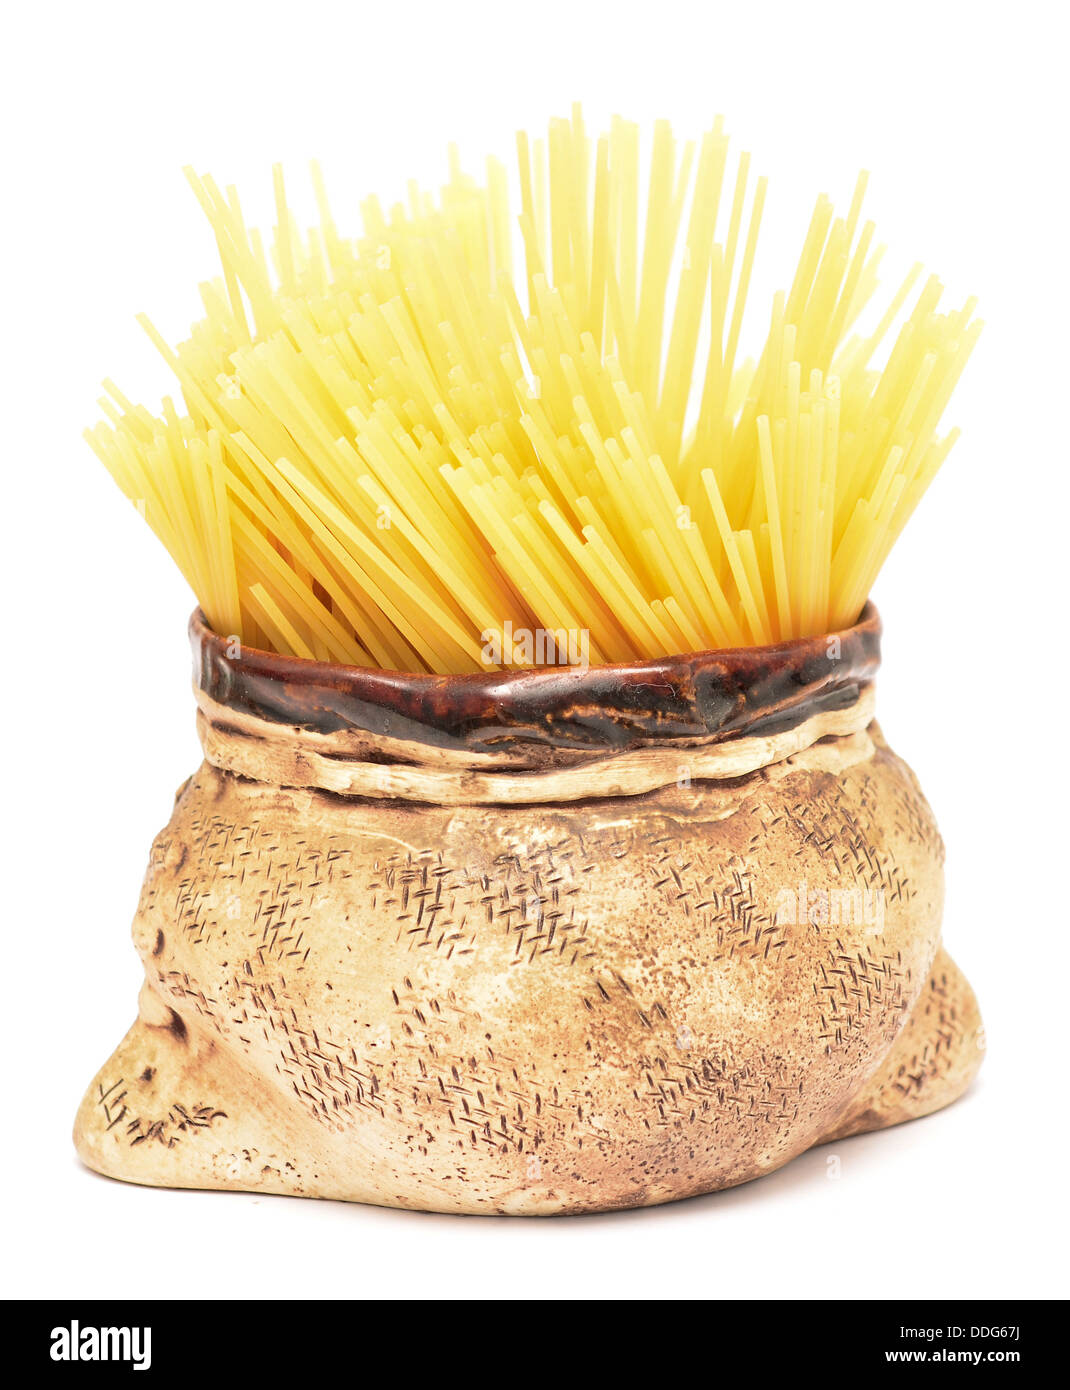 Los espaguetis crudos en un recipiente aislado en blanco Foto de stock